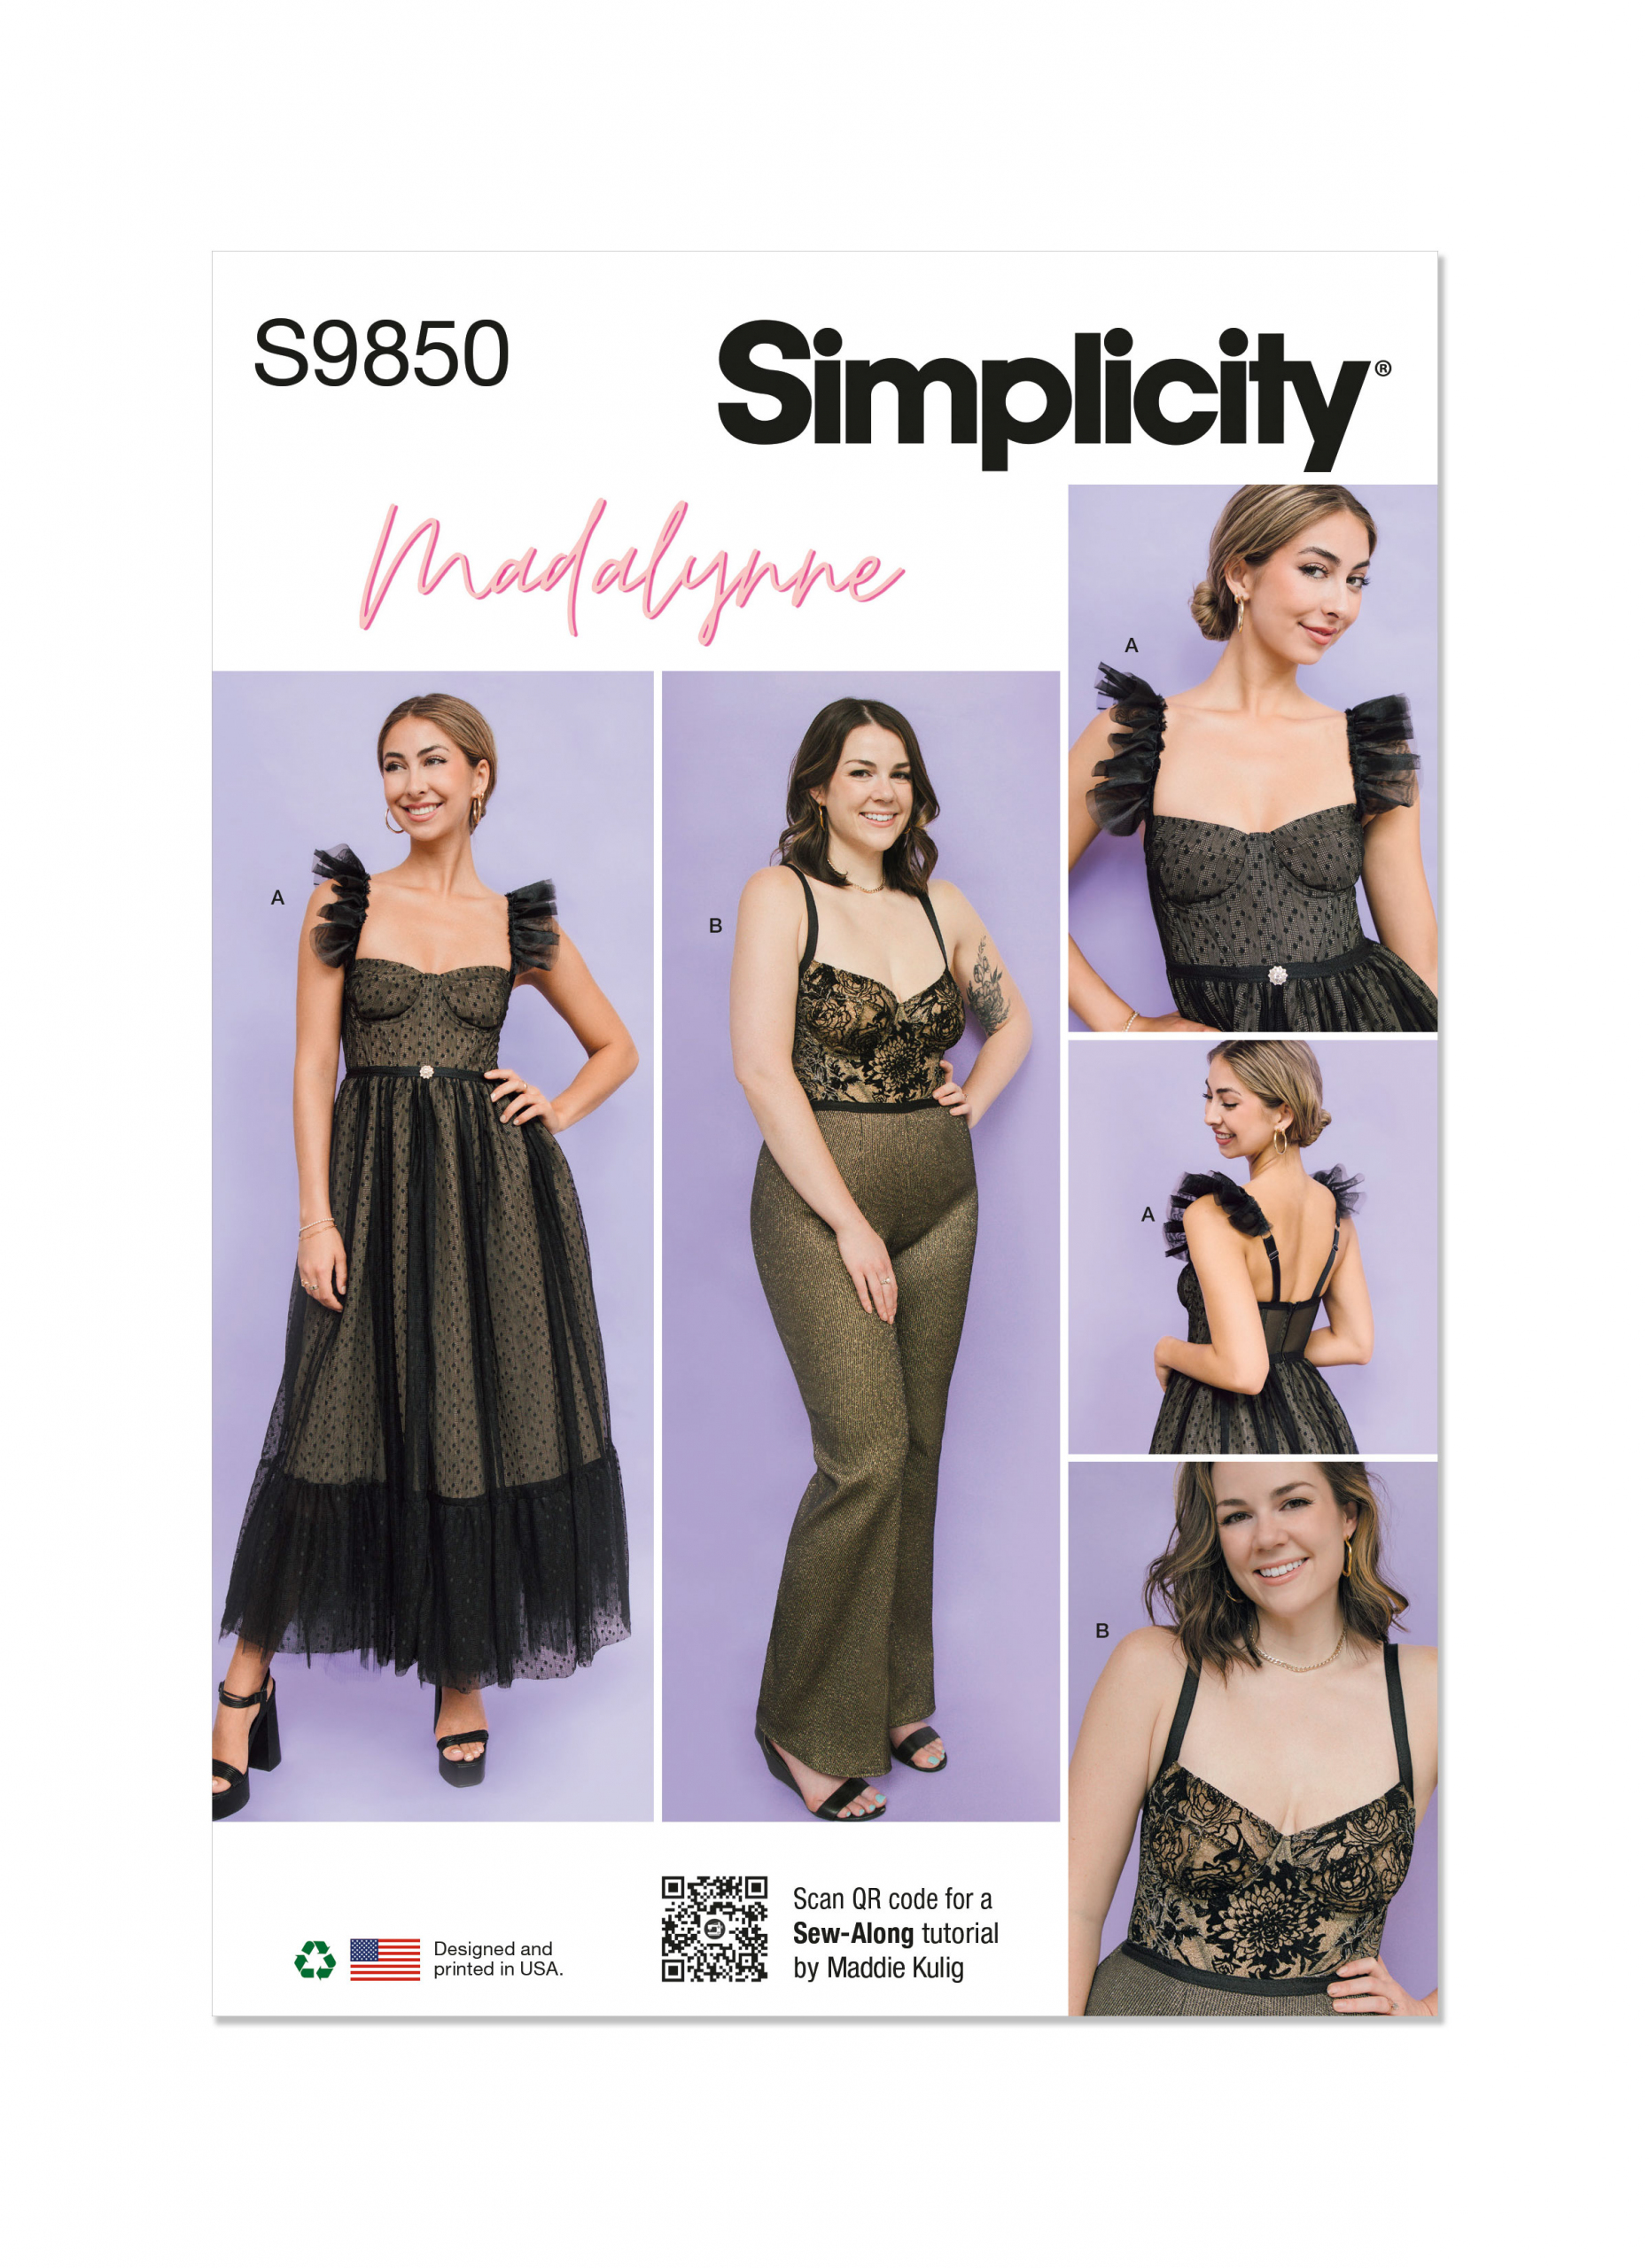 Simplicity Pattern 8229 Underwire Bra & Panties by Madalynne